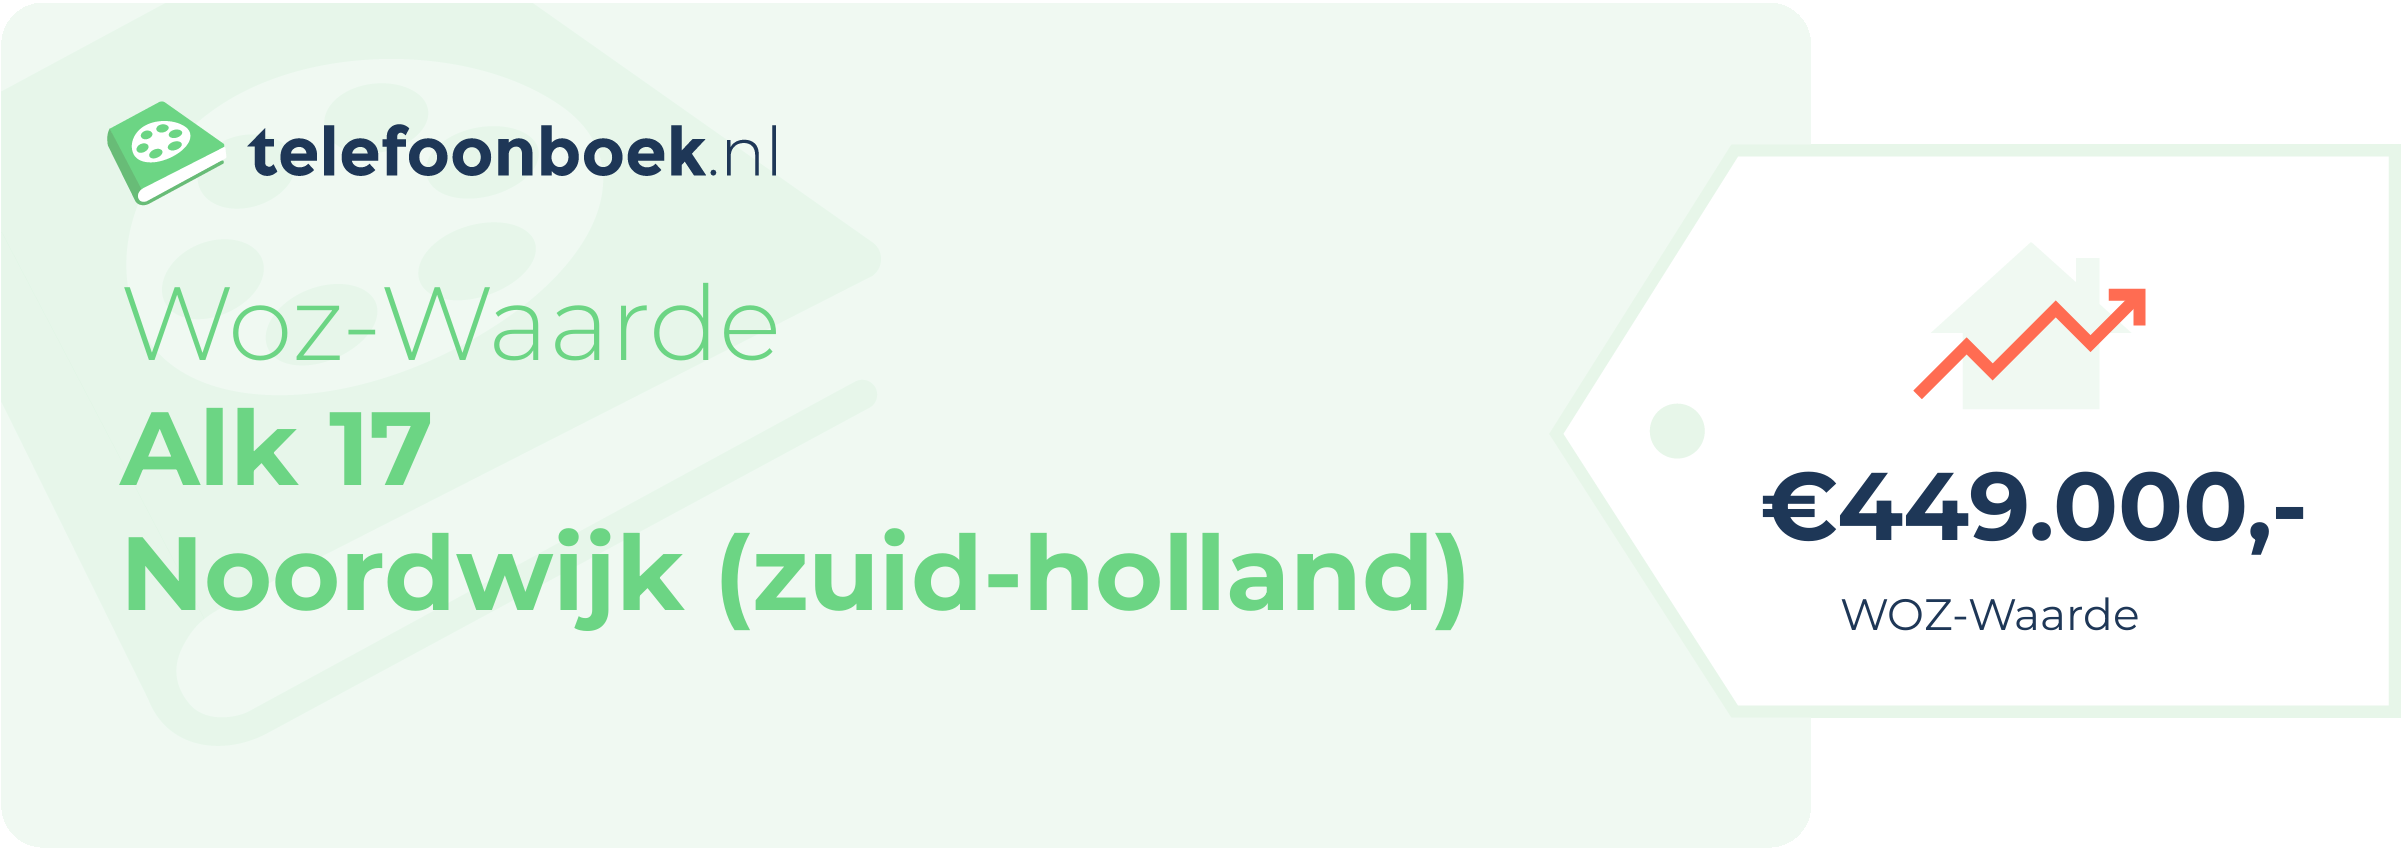 WOZ-waarde Alk 17 Noordwijk (Zuid-Holland)